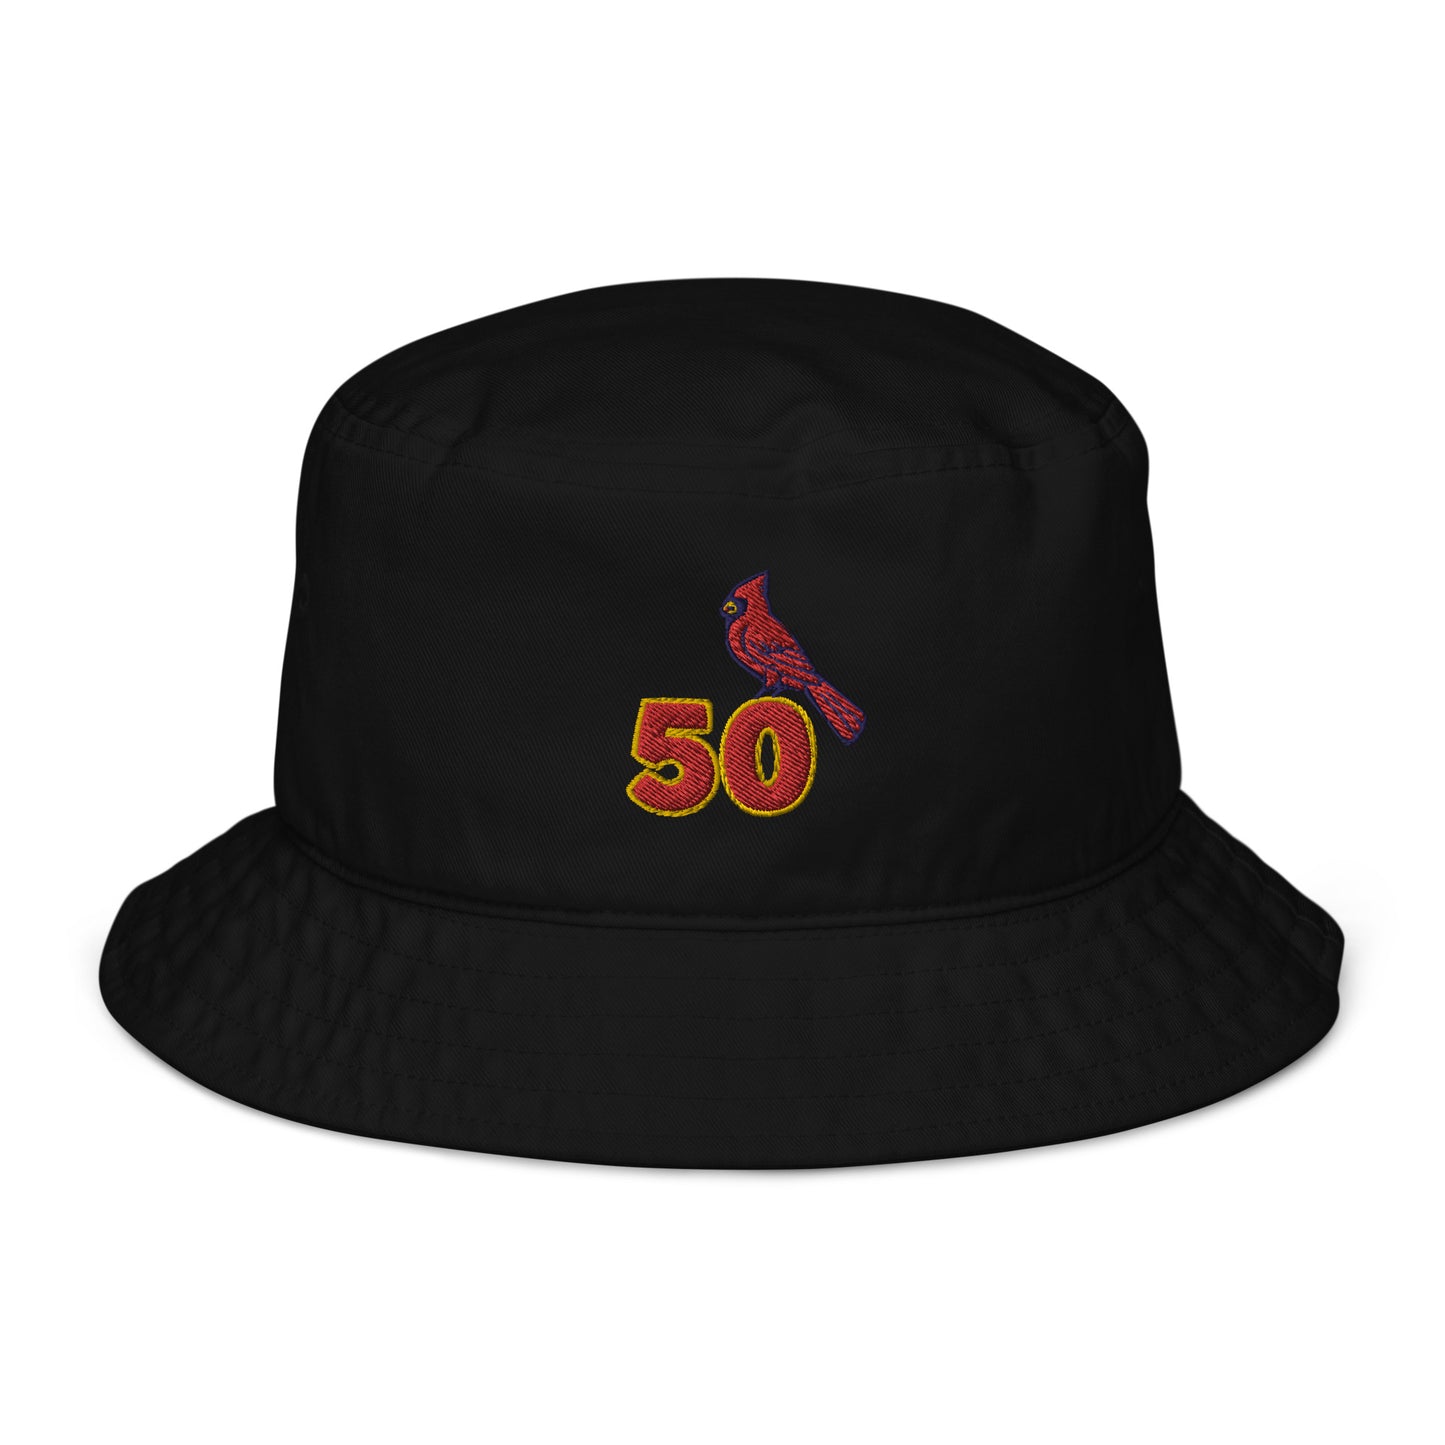 Adam Wainwright / Waino Hat / St. Louis Cardinals Organic bucket hat